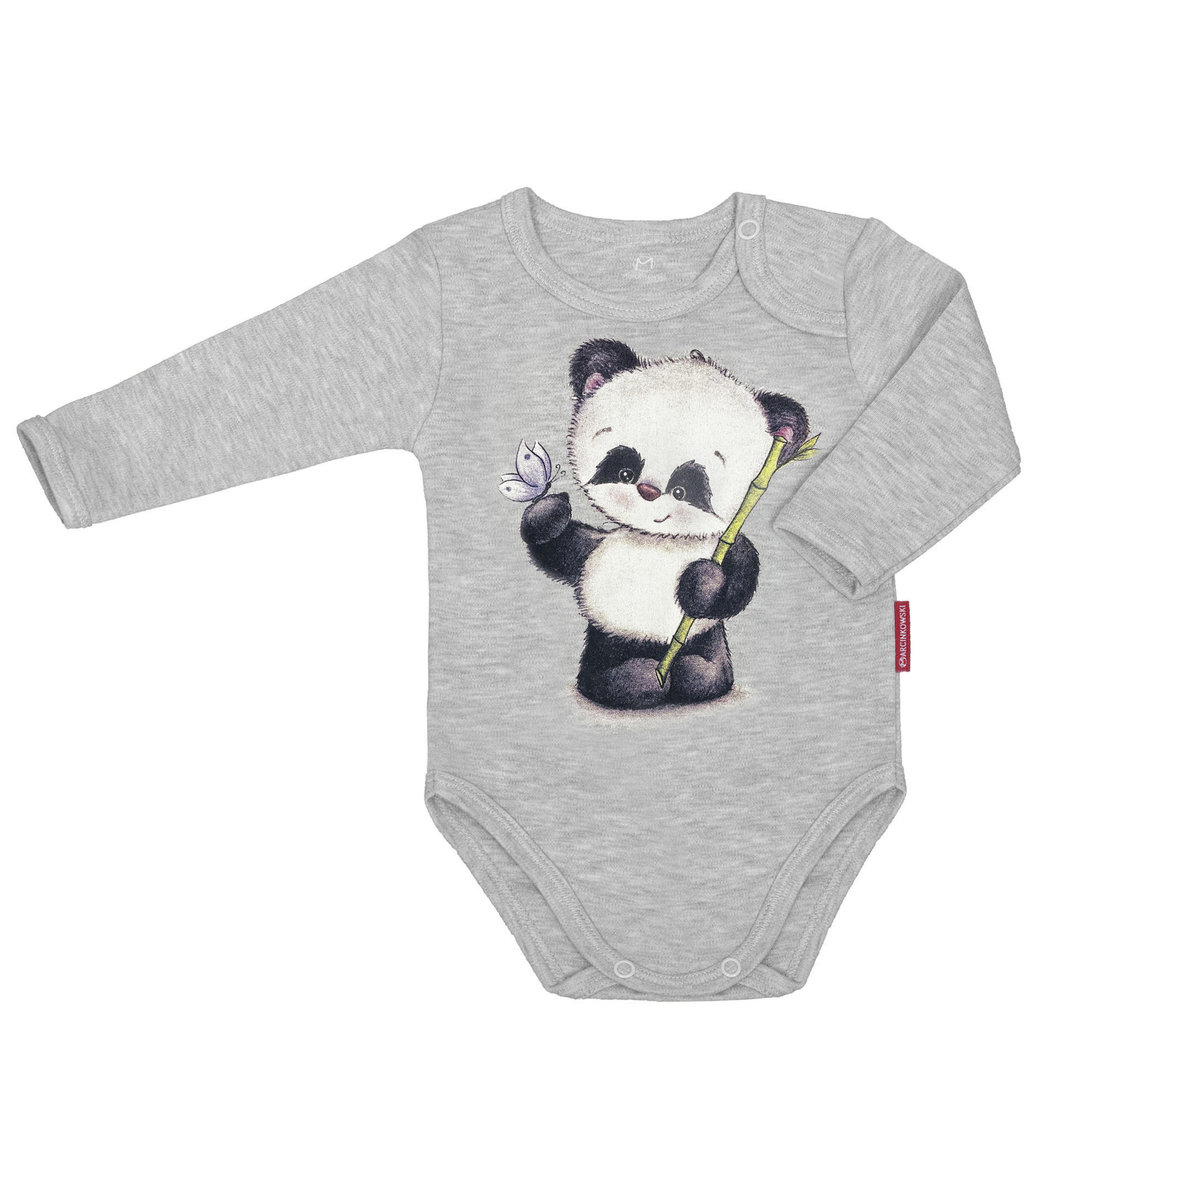 Body niemowlęce dla chłopca i dziewczynki unisex długi rękaw bawełniane szare panda 68